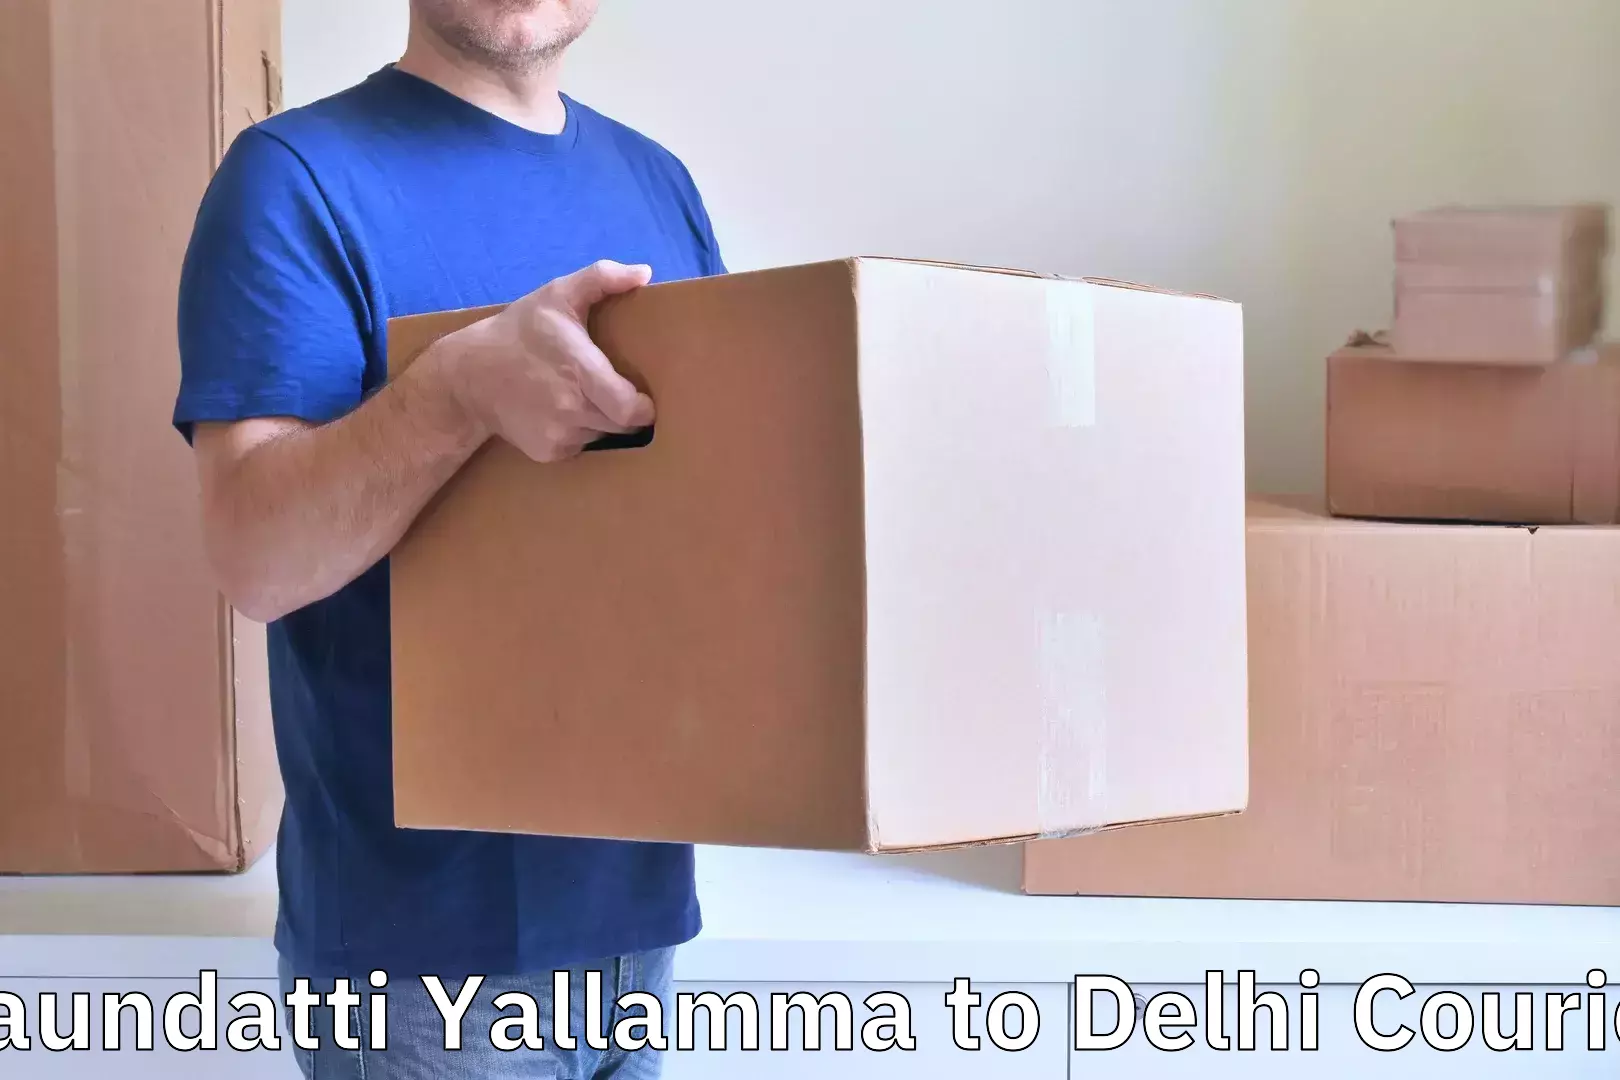 Baggage delivery solutions in Saundatti Yallamma to Jamia Millia Islamia New Delhi